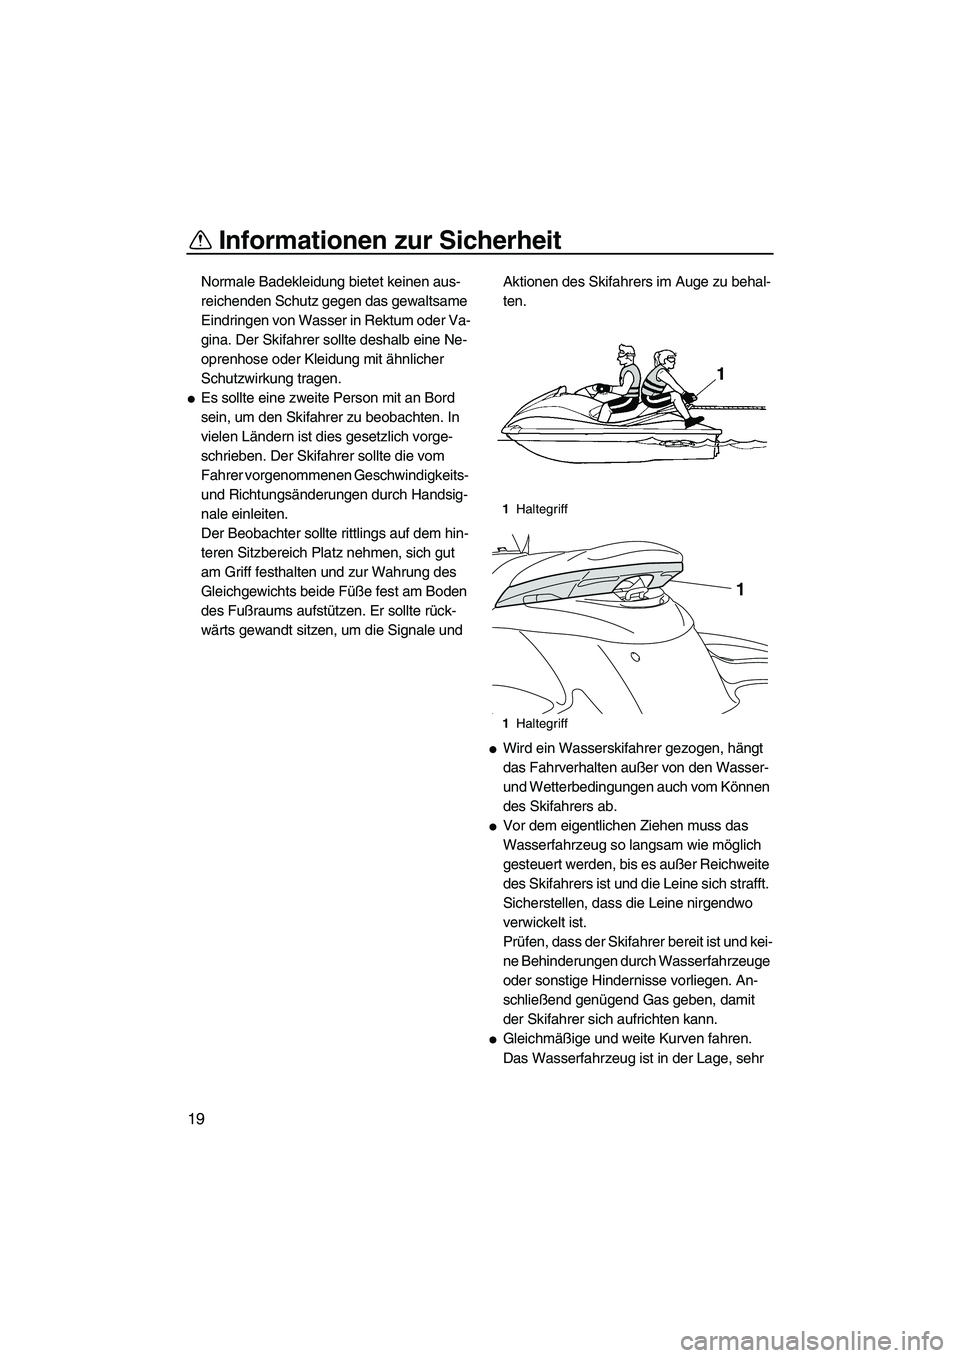 YAMAHA FZS 2013  Notices Demploi (in French) Informationen zur Sicherheit
19
Normale Badekleidung bietet keinen aus-
reichenden Schutz gegen das gewaltsame 
Eindringen von Wasser in Rektum oder Va-
gina. Der Skifahrer sollte deshalb eine Ne-
opr